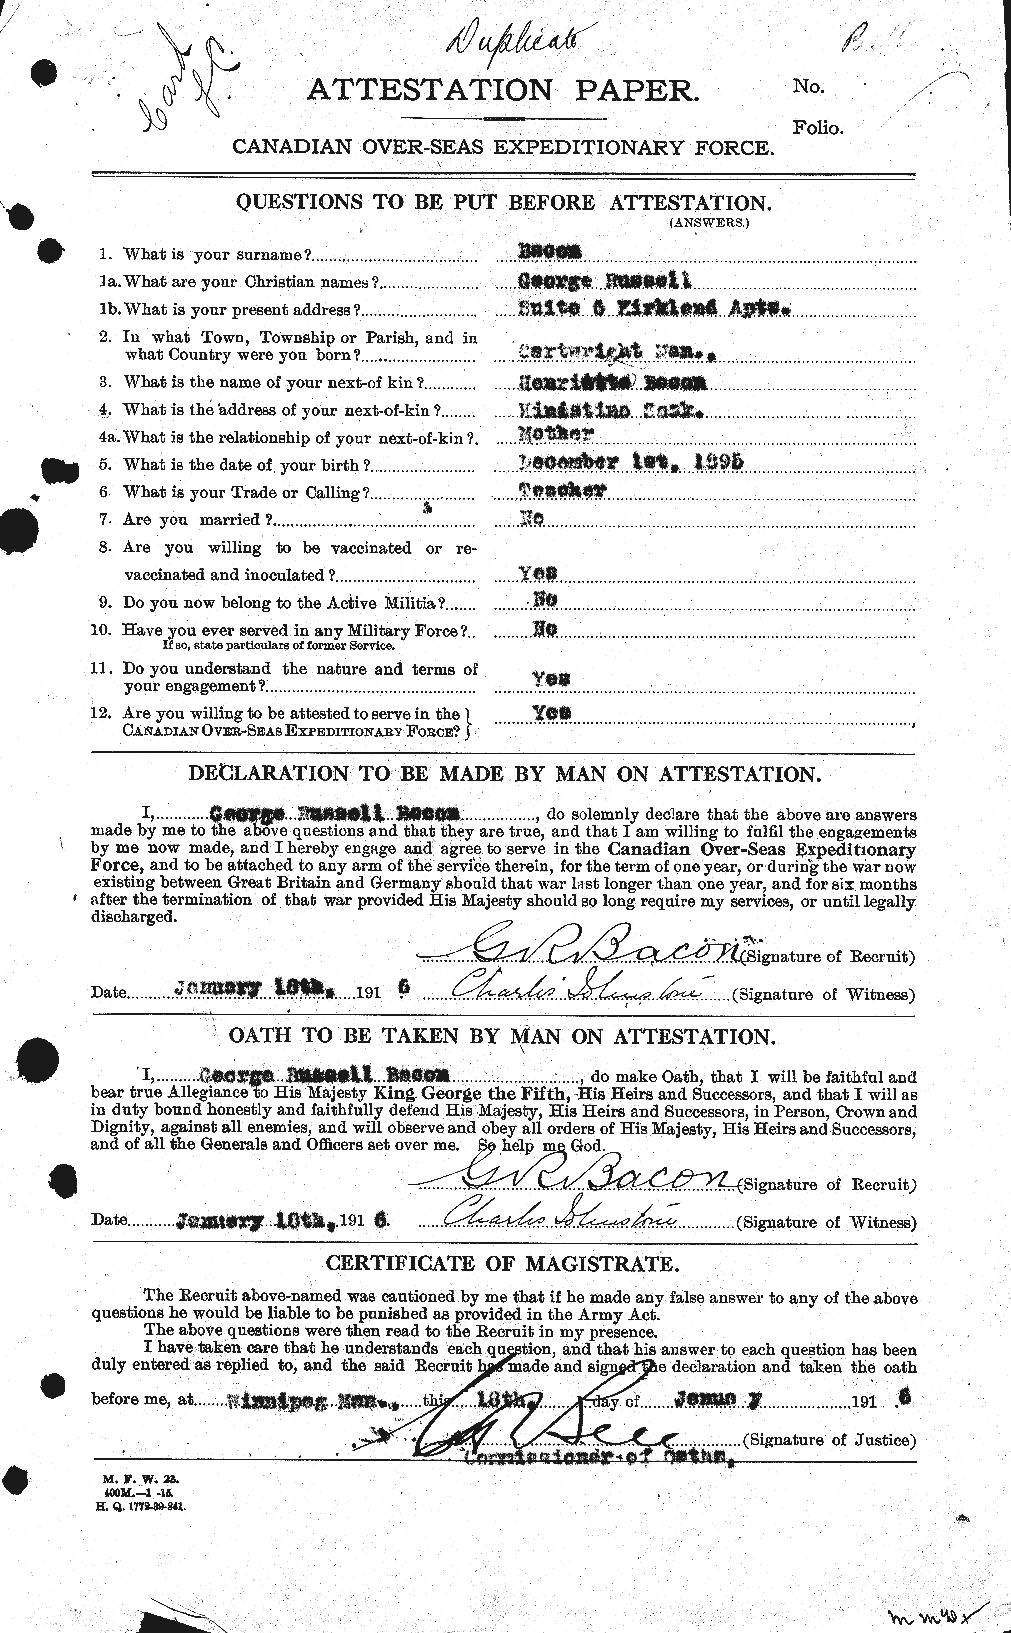 Dossiers du Personnel de la Première Guerre mondiale - CEC 217887a